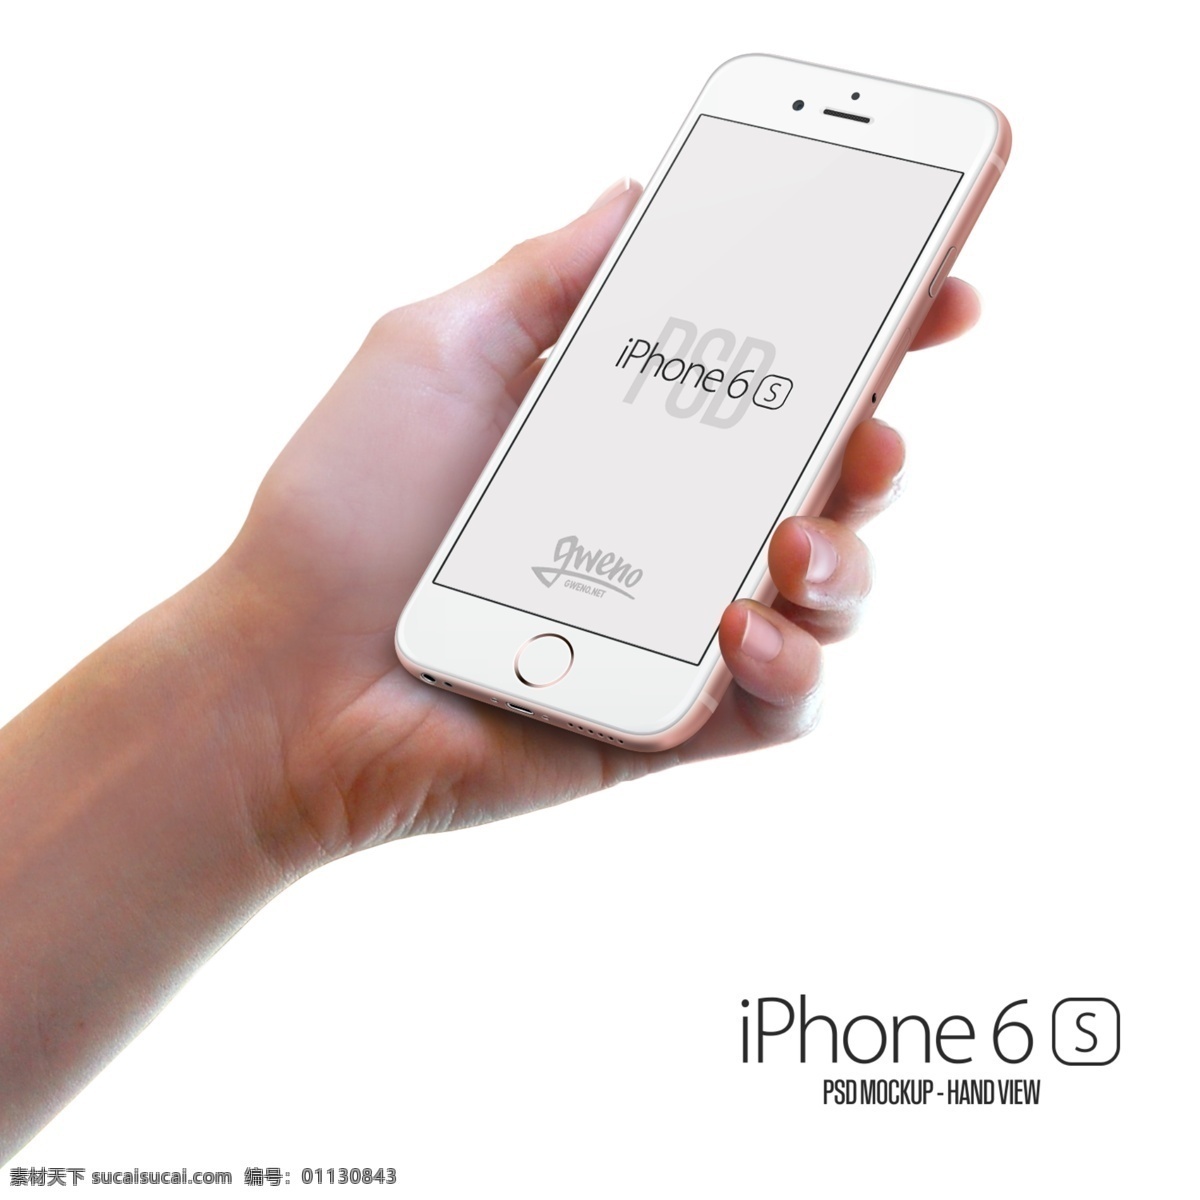 苹果 iphone 6s plus 玫瑰金 新 时尚 旗舰手机 美国 手机 通信器材 数码家电 数码产品 苹果手机 apple 设备 苹果产品 现代科技